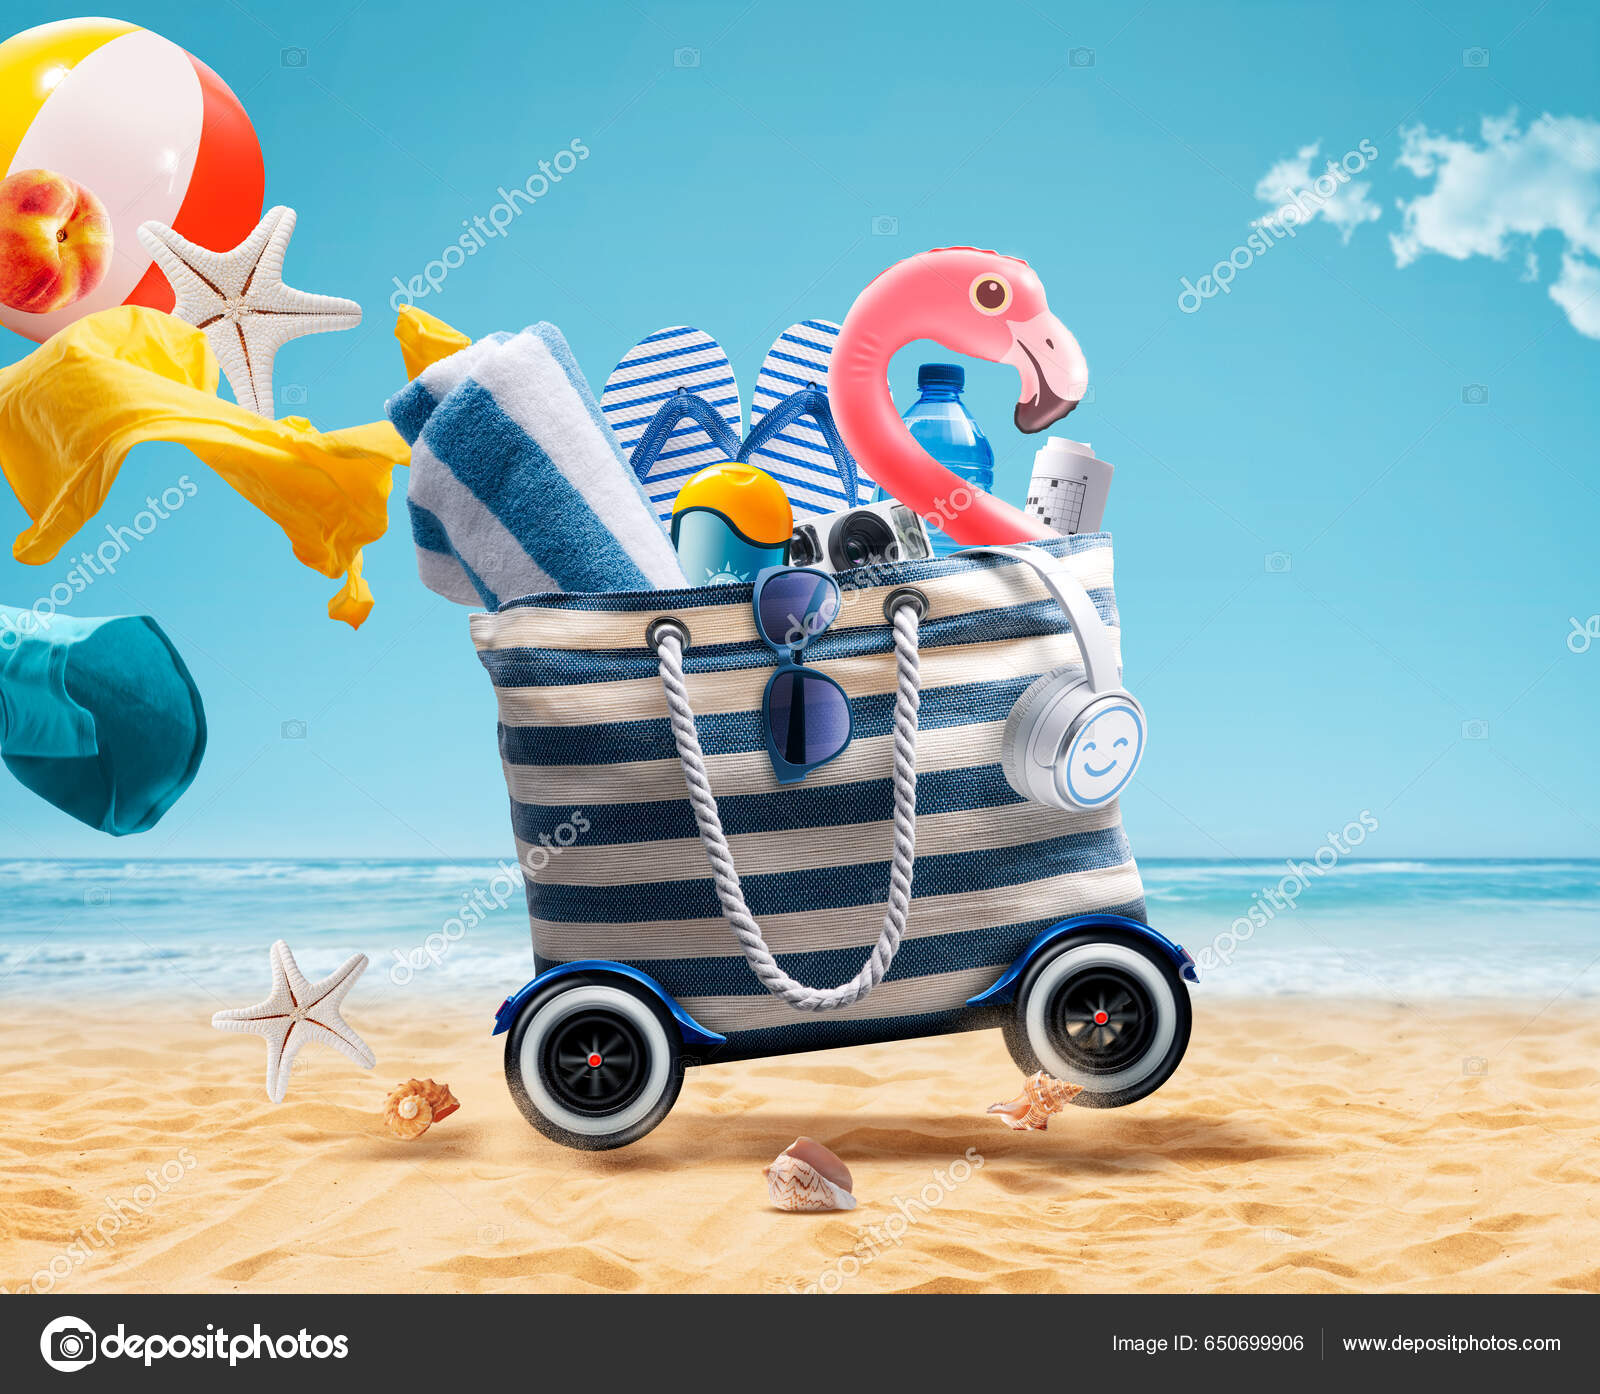 Funny Flamingo Inflable Accesorios Playa Una Bolsa Con Ruedas Que:  fotografía de stock © stokkete #650699906 | Depositphotos